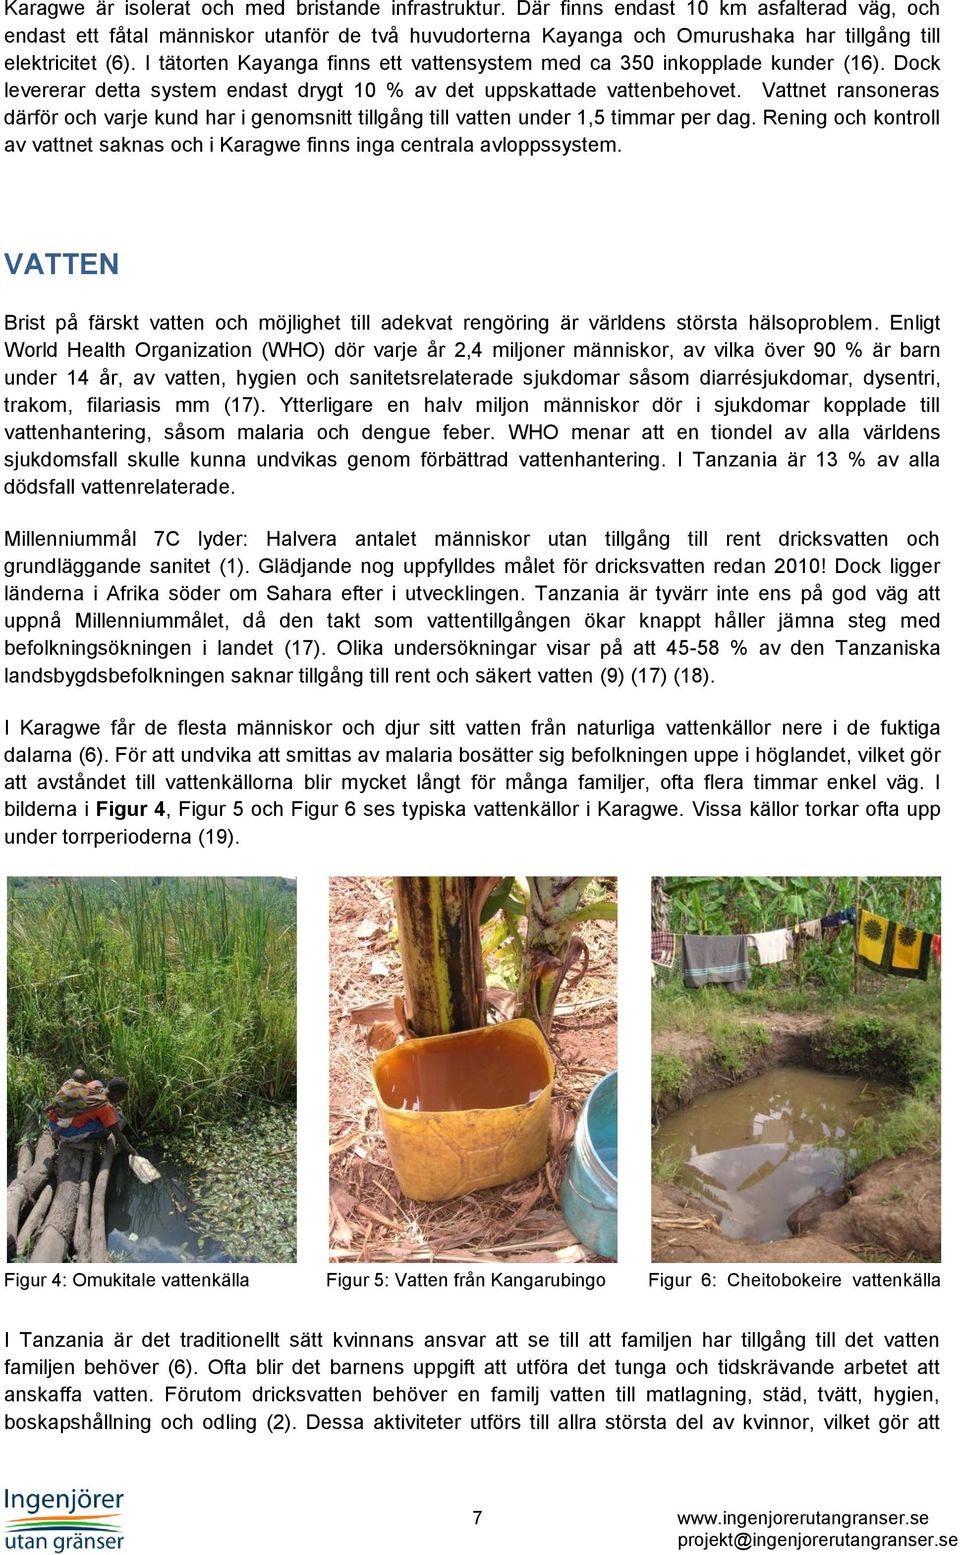 I tätorten Kayanga finns ett vattensystem med ca 350 inkopplade kunder (16). Dock levererar detta system endast drygt 10 % av det uppskattade vattenbehovet.